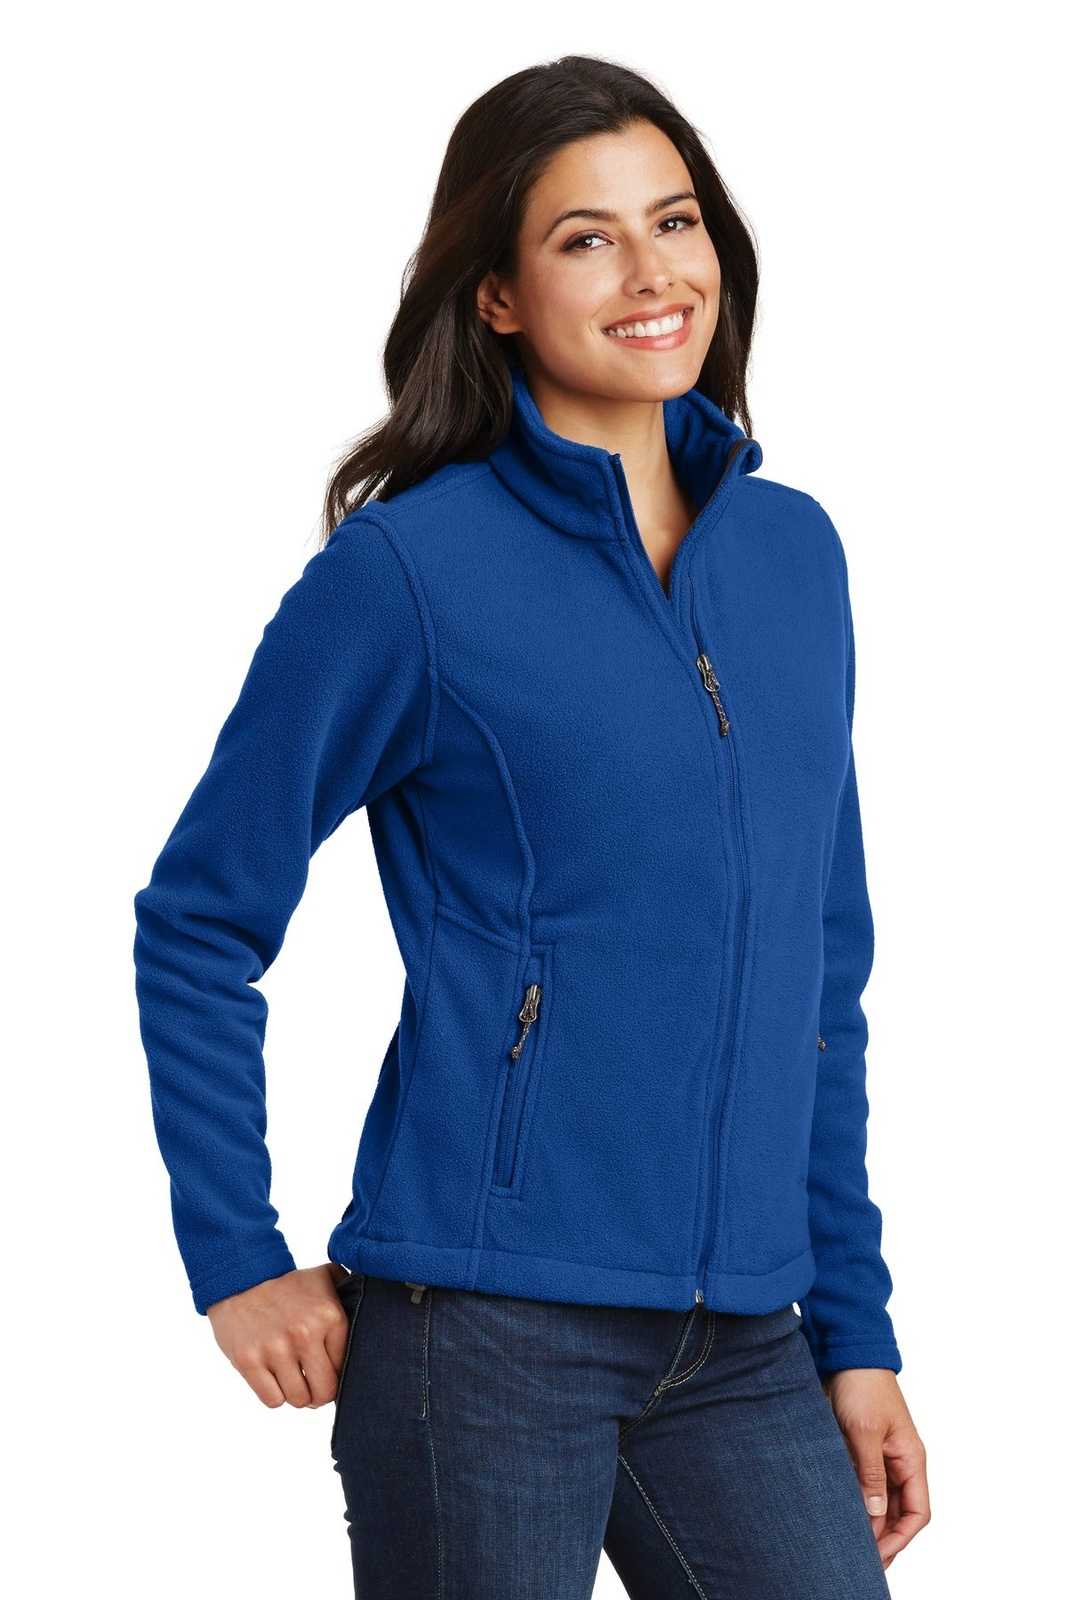 Port Authority L217 Ladies Value Fleece Jacket - True Royal - HIT a Double - 4